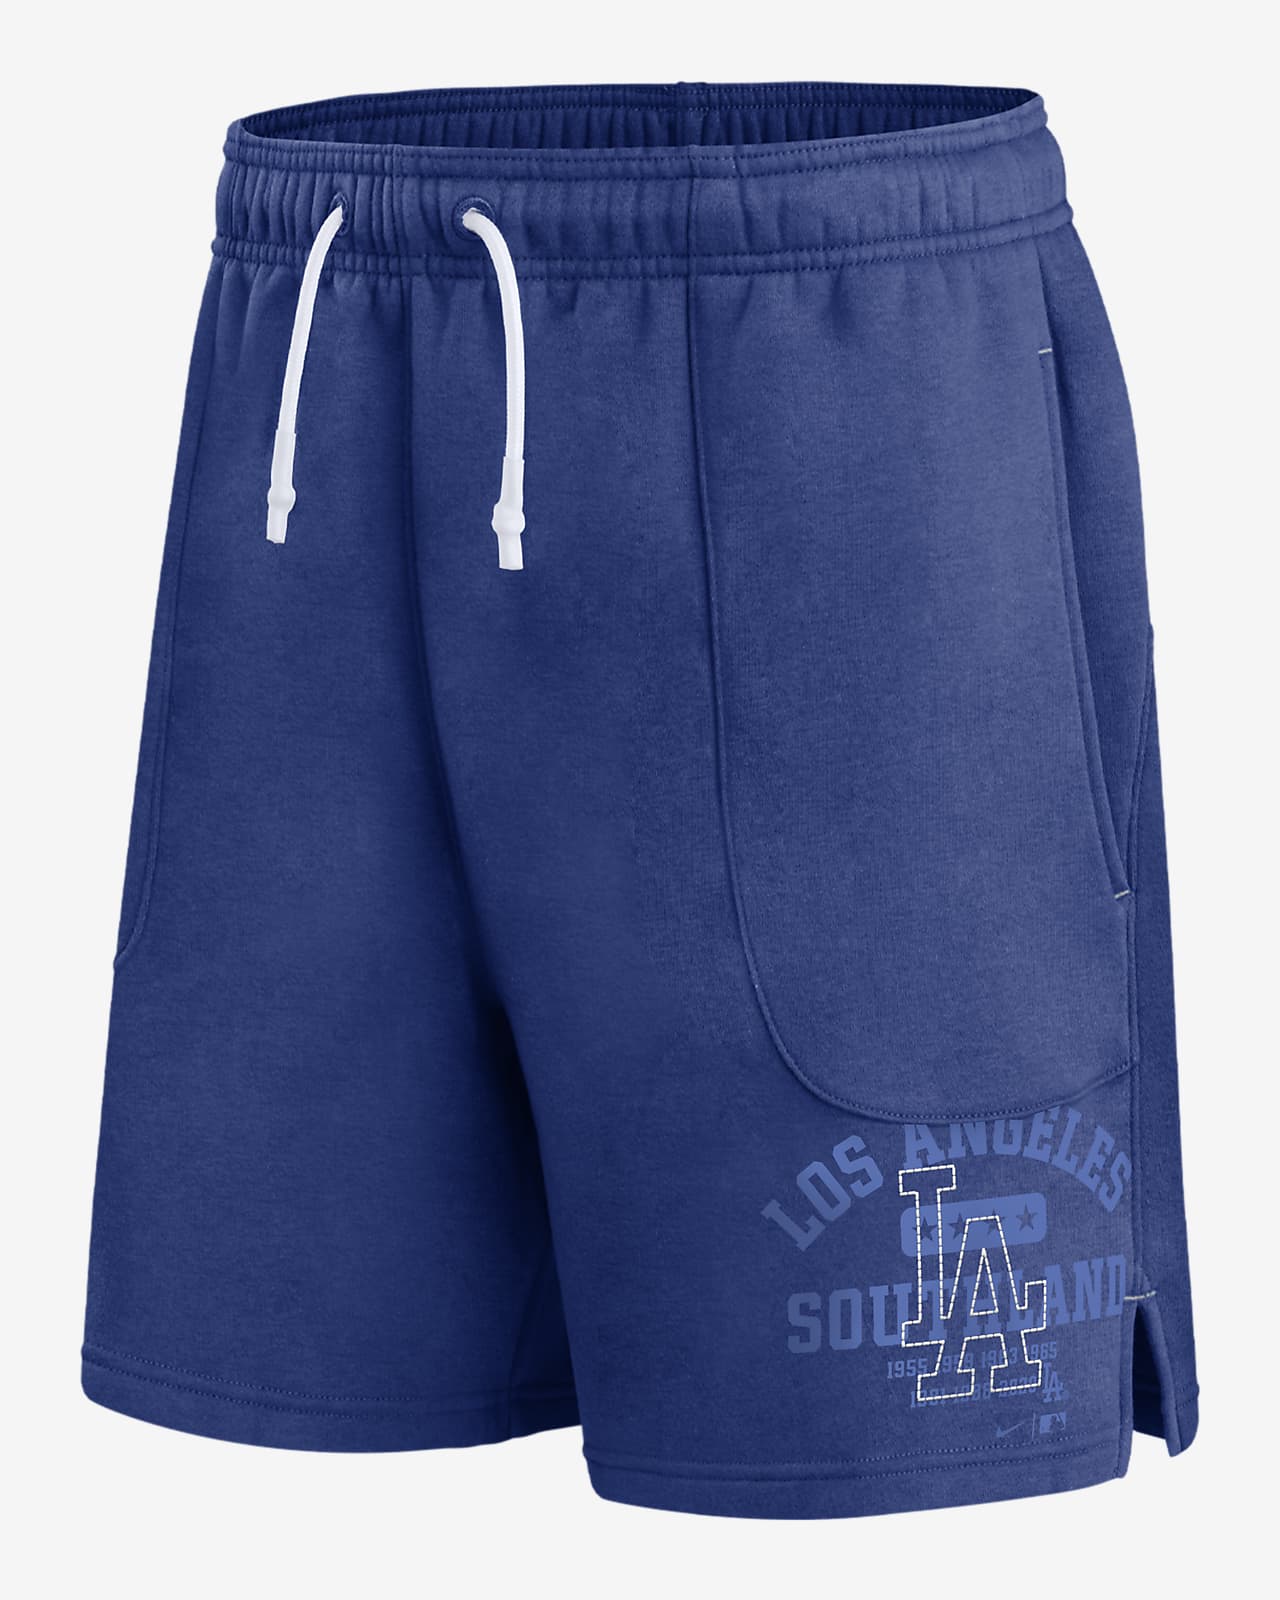 Los Angeles Dodgers Royal Shorts  Baseball shorts, Los angeles dodgers,  Baseball jersey outfit